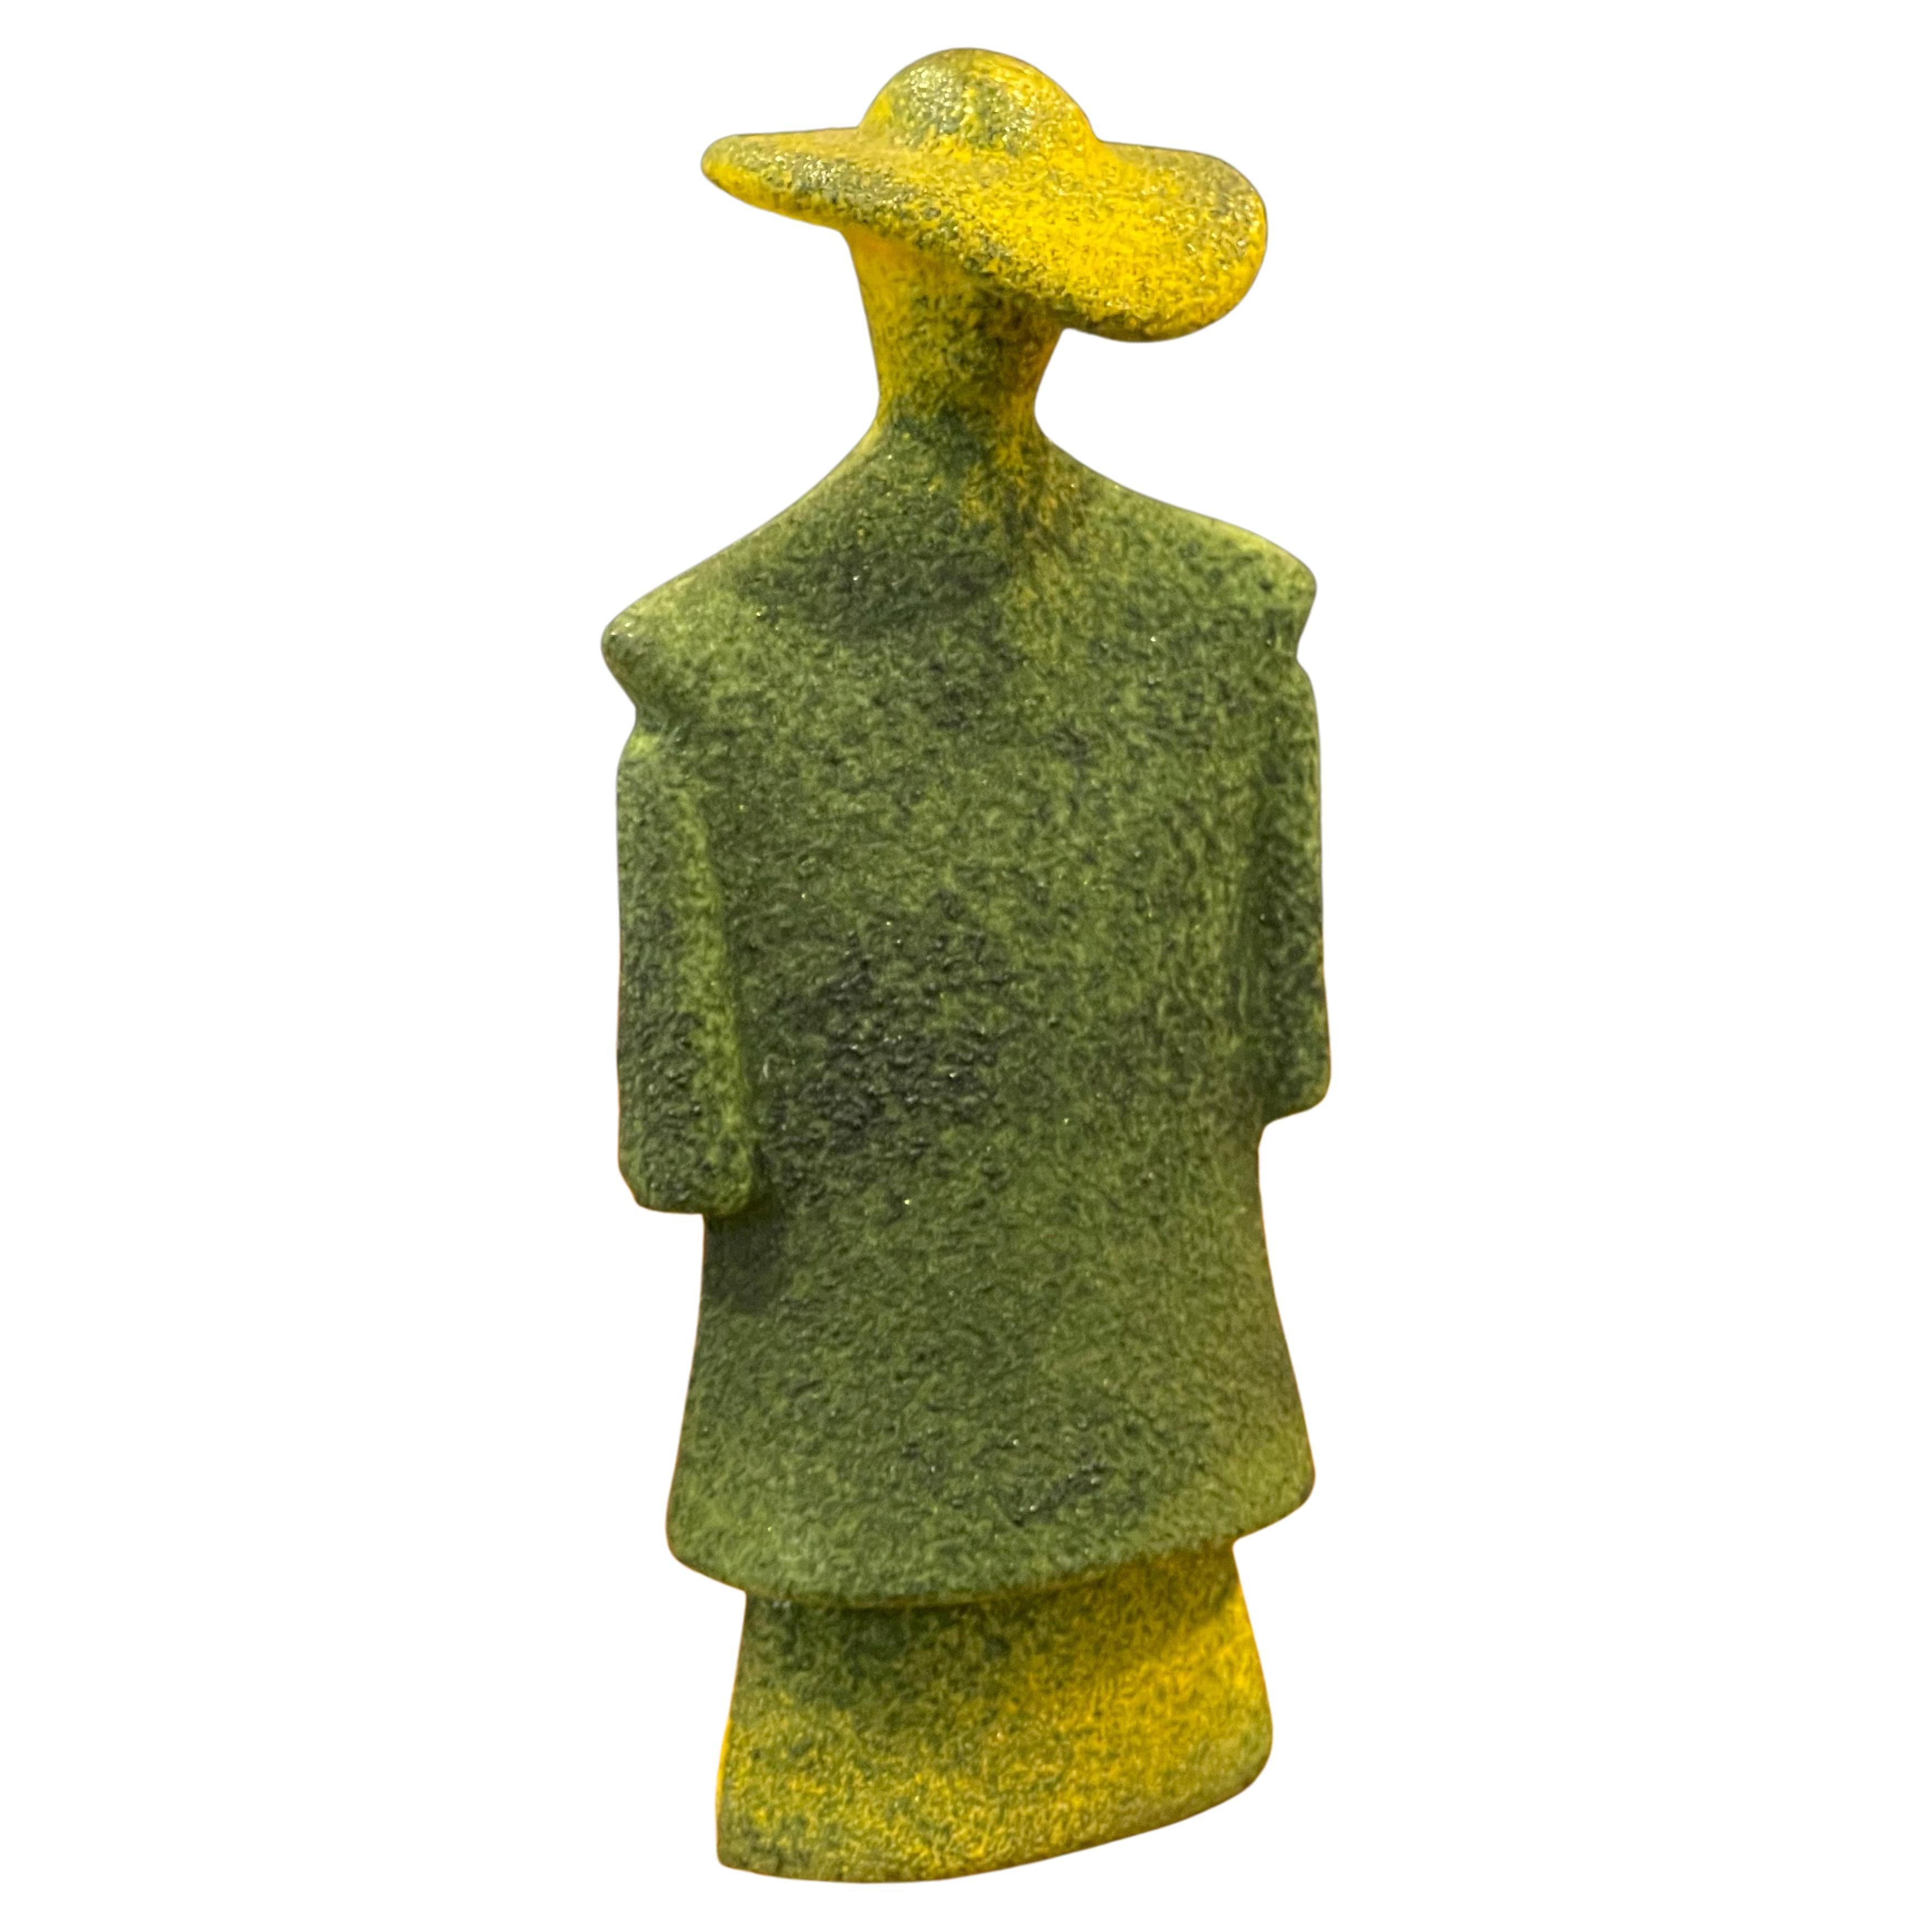 Poncho Green Art Glass Catwalk Sculpture by Kjell Engman for Kosta Boda Sweden For Sale 8